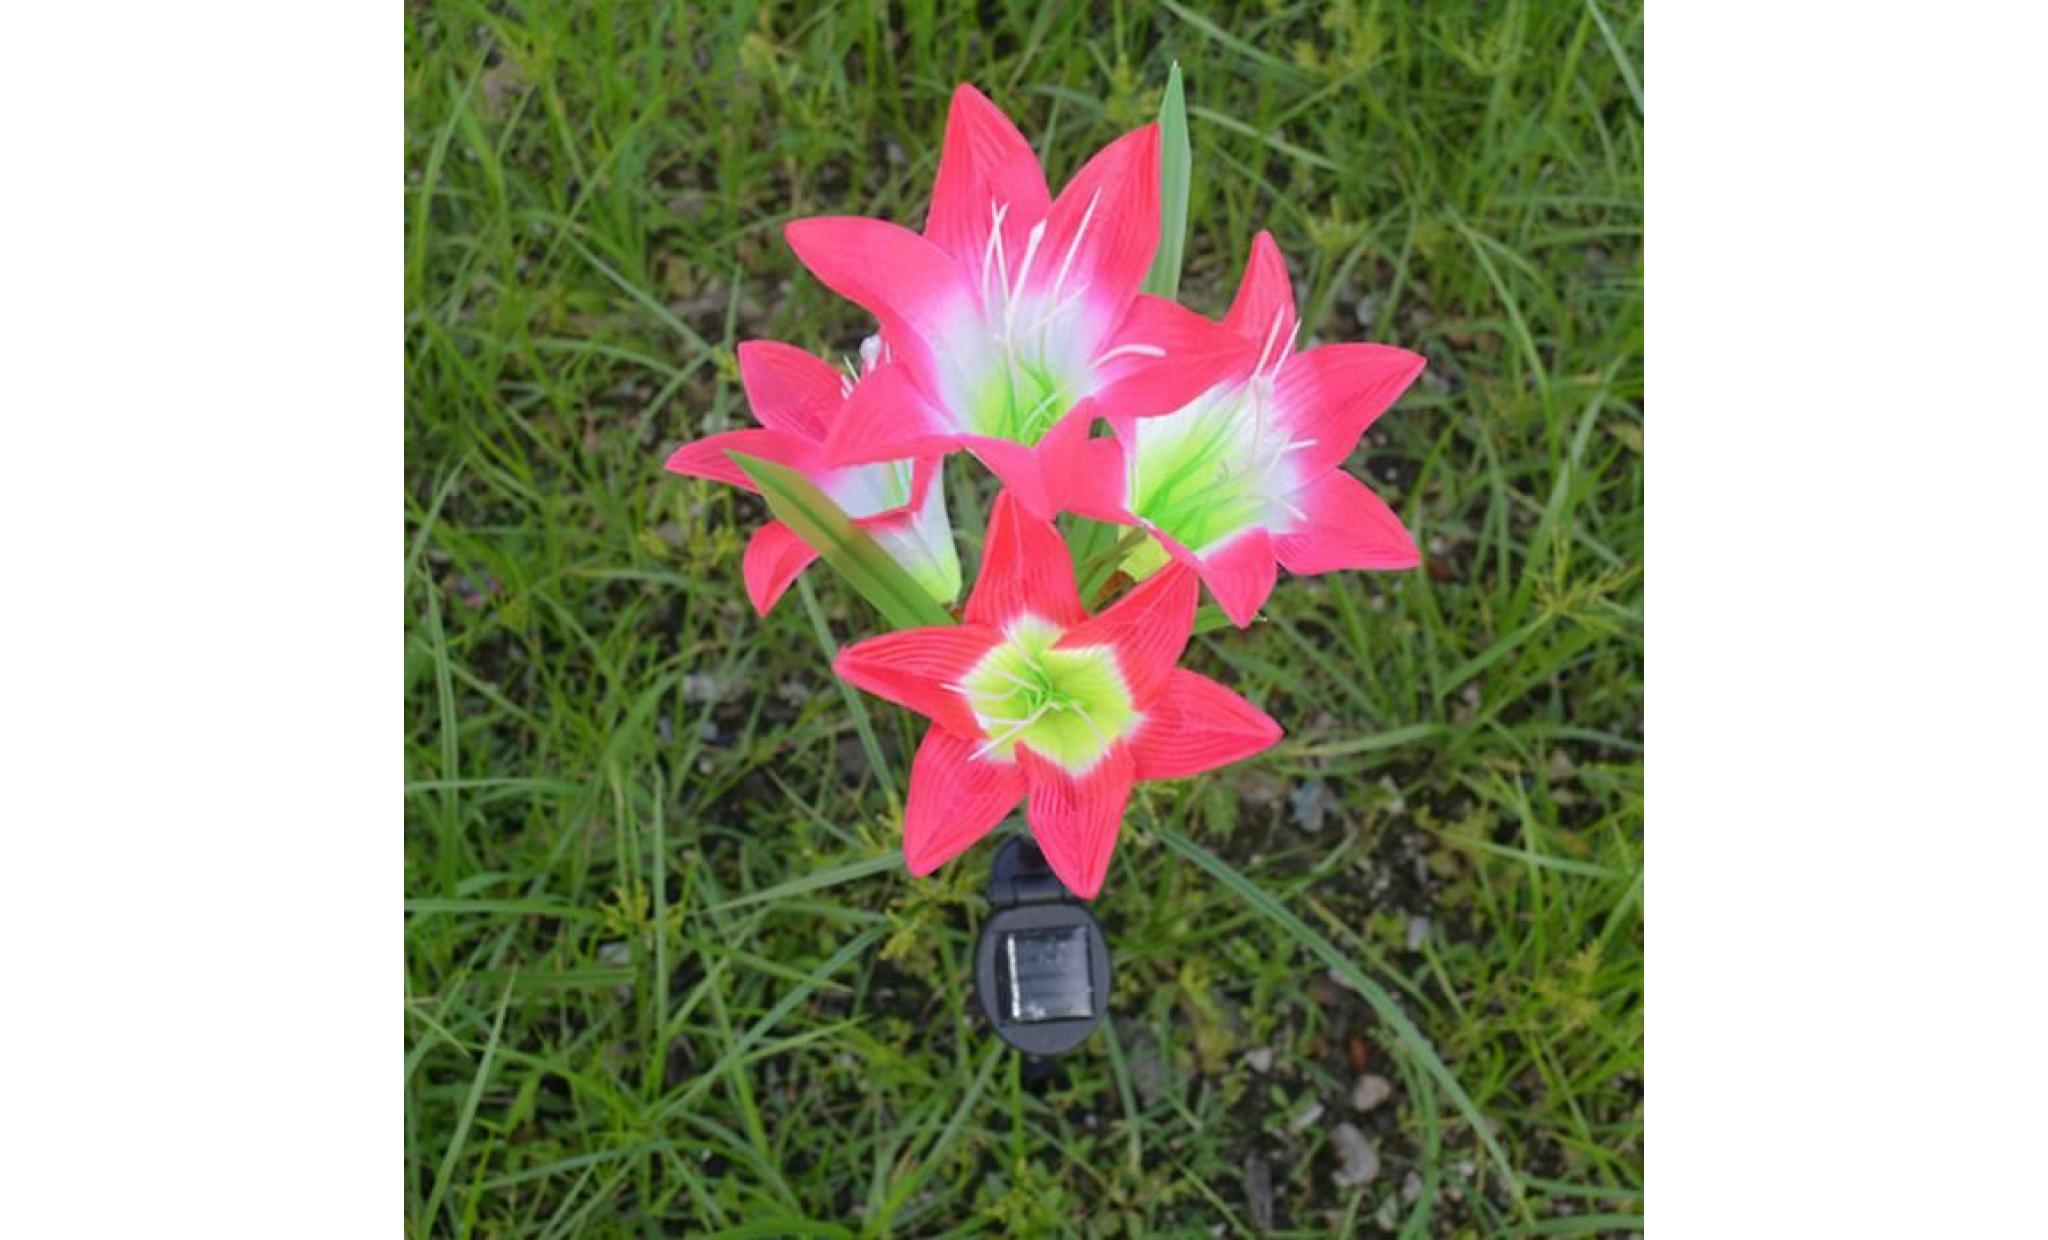 2 pièces lily flower garden powered solaire stake lumières fleurs artificielles led li640651 pas cher